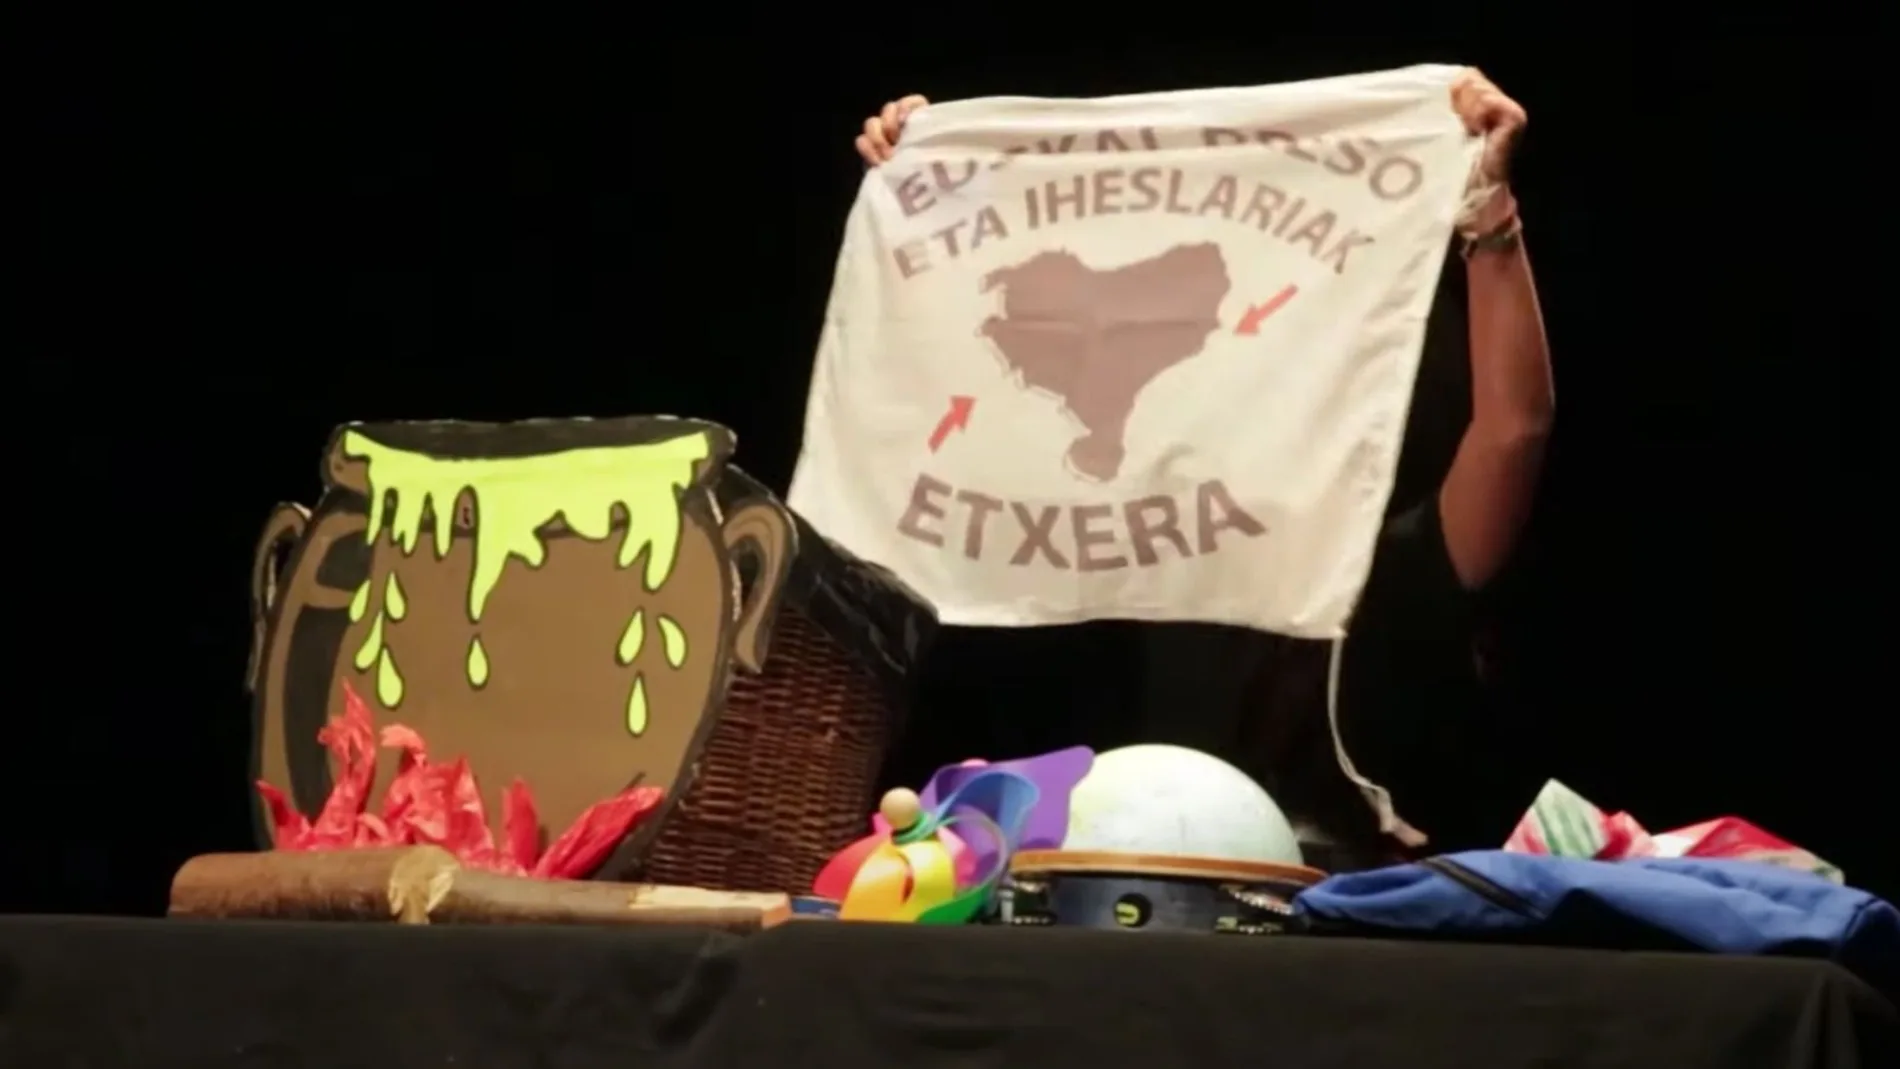 Acto en la Casa de la Cultura de Burlada con programación infantil donde se mostró la bandera que reclama el fin de la dispersión de los presos de ETA